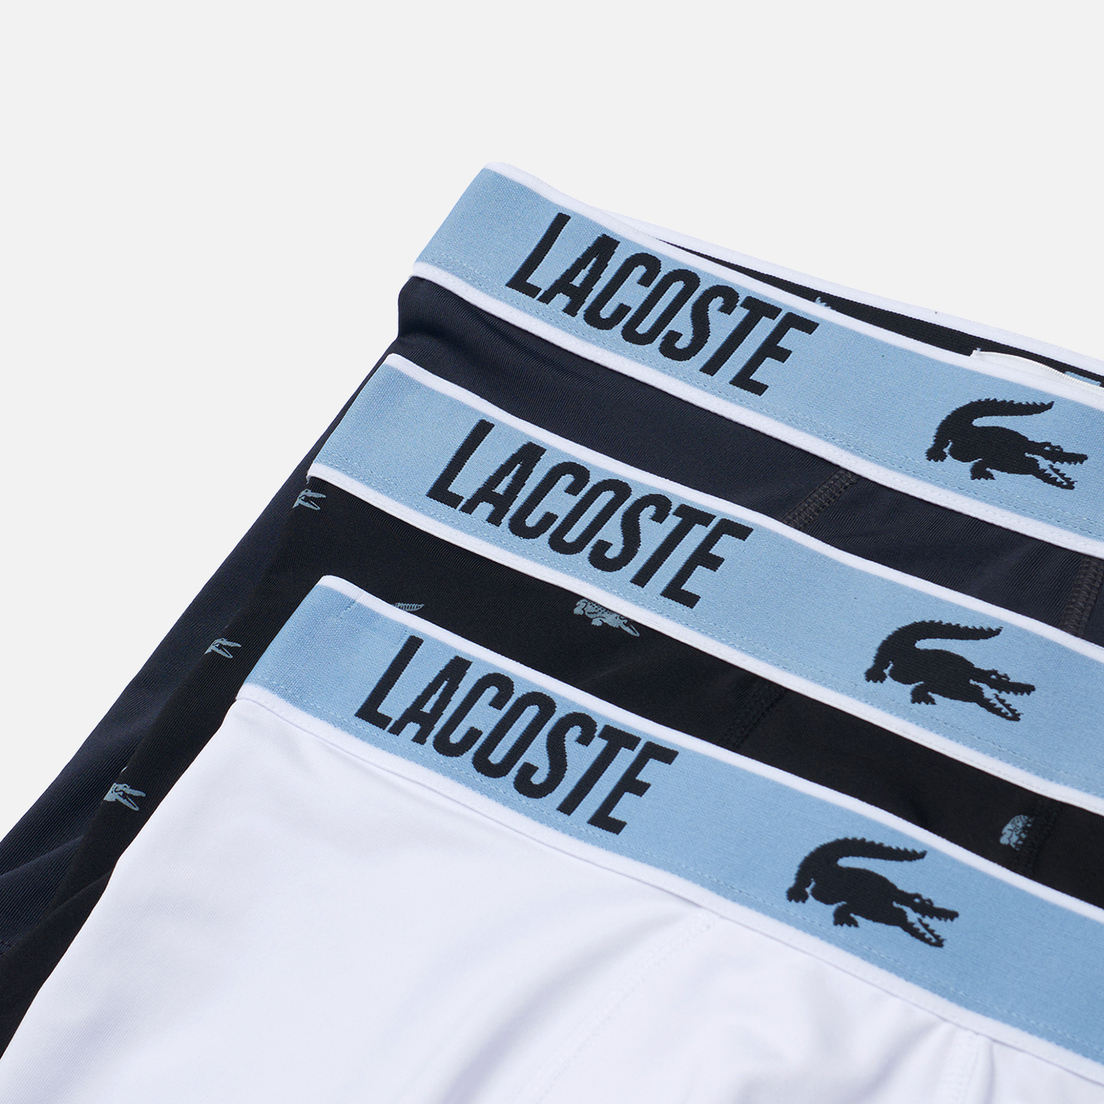 Lacoste Underwear Комплект мужских трусов 3-Pack Boxer Iconic